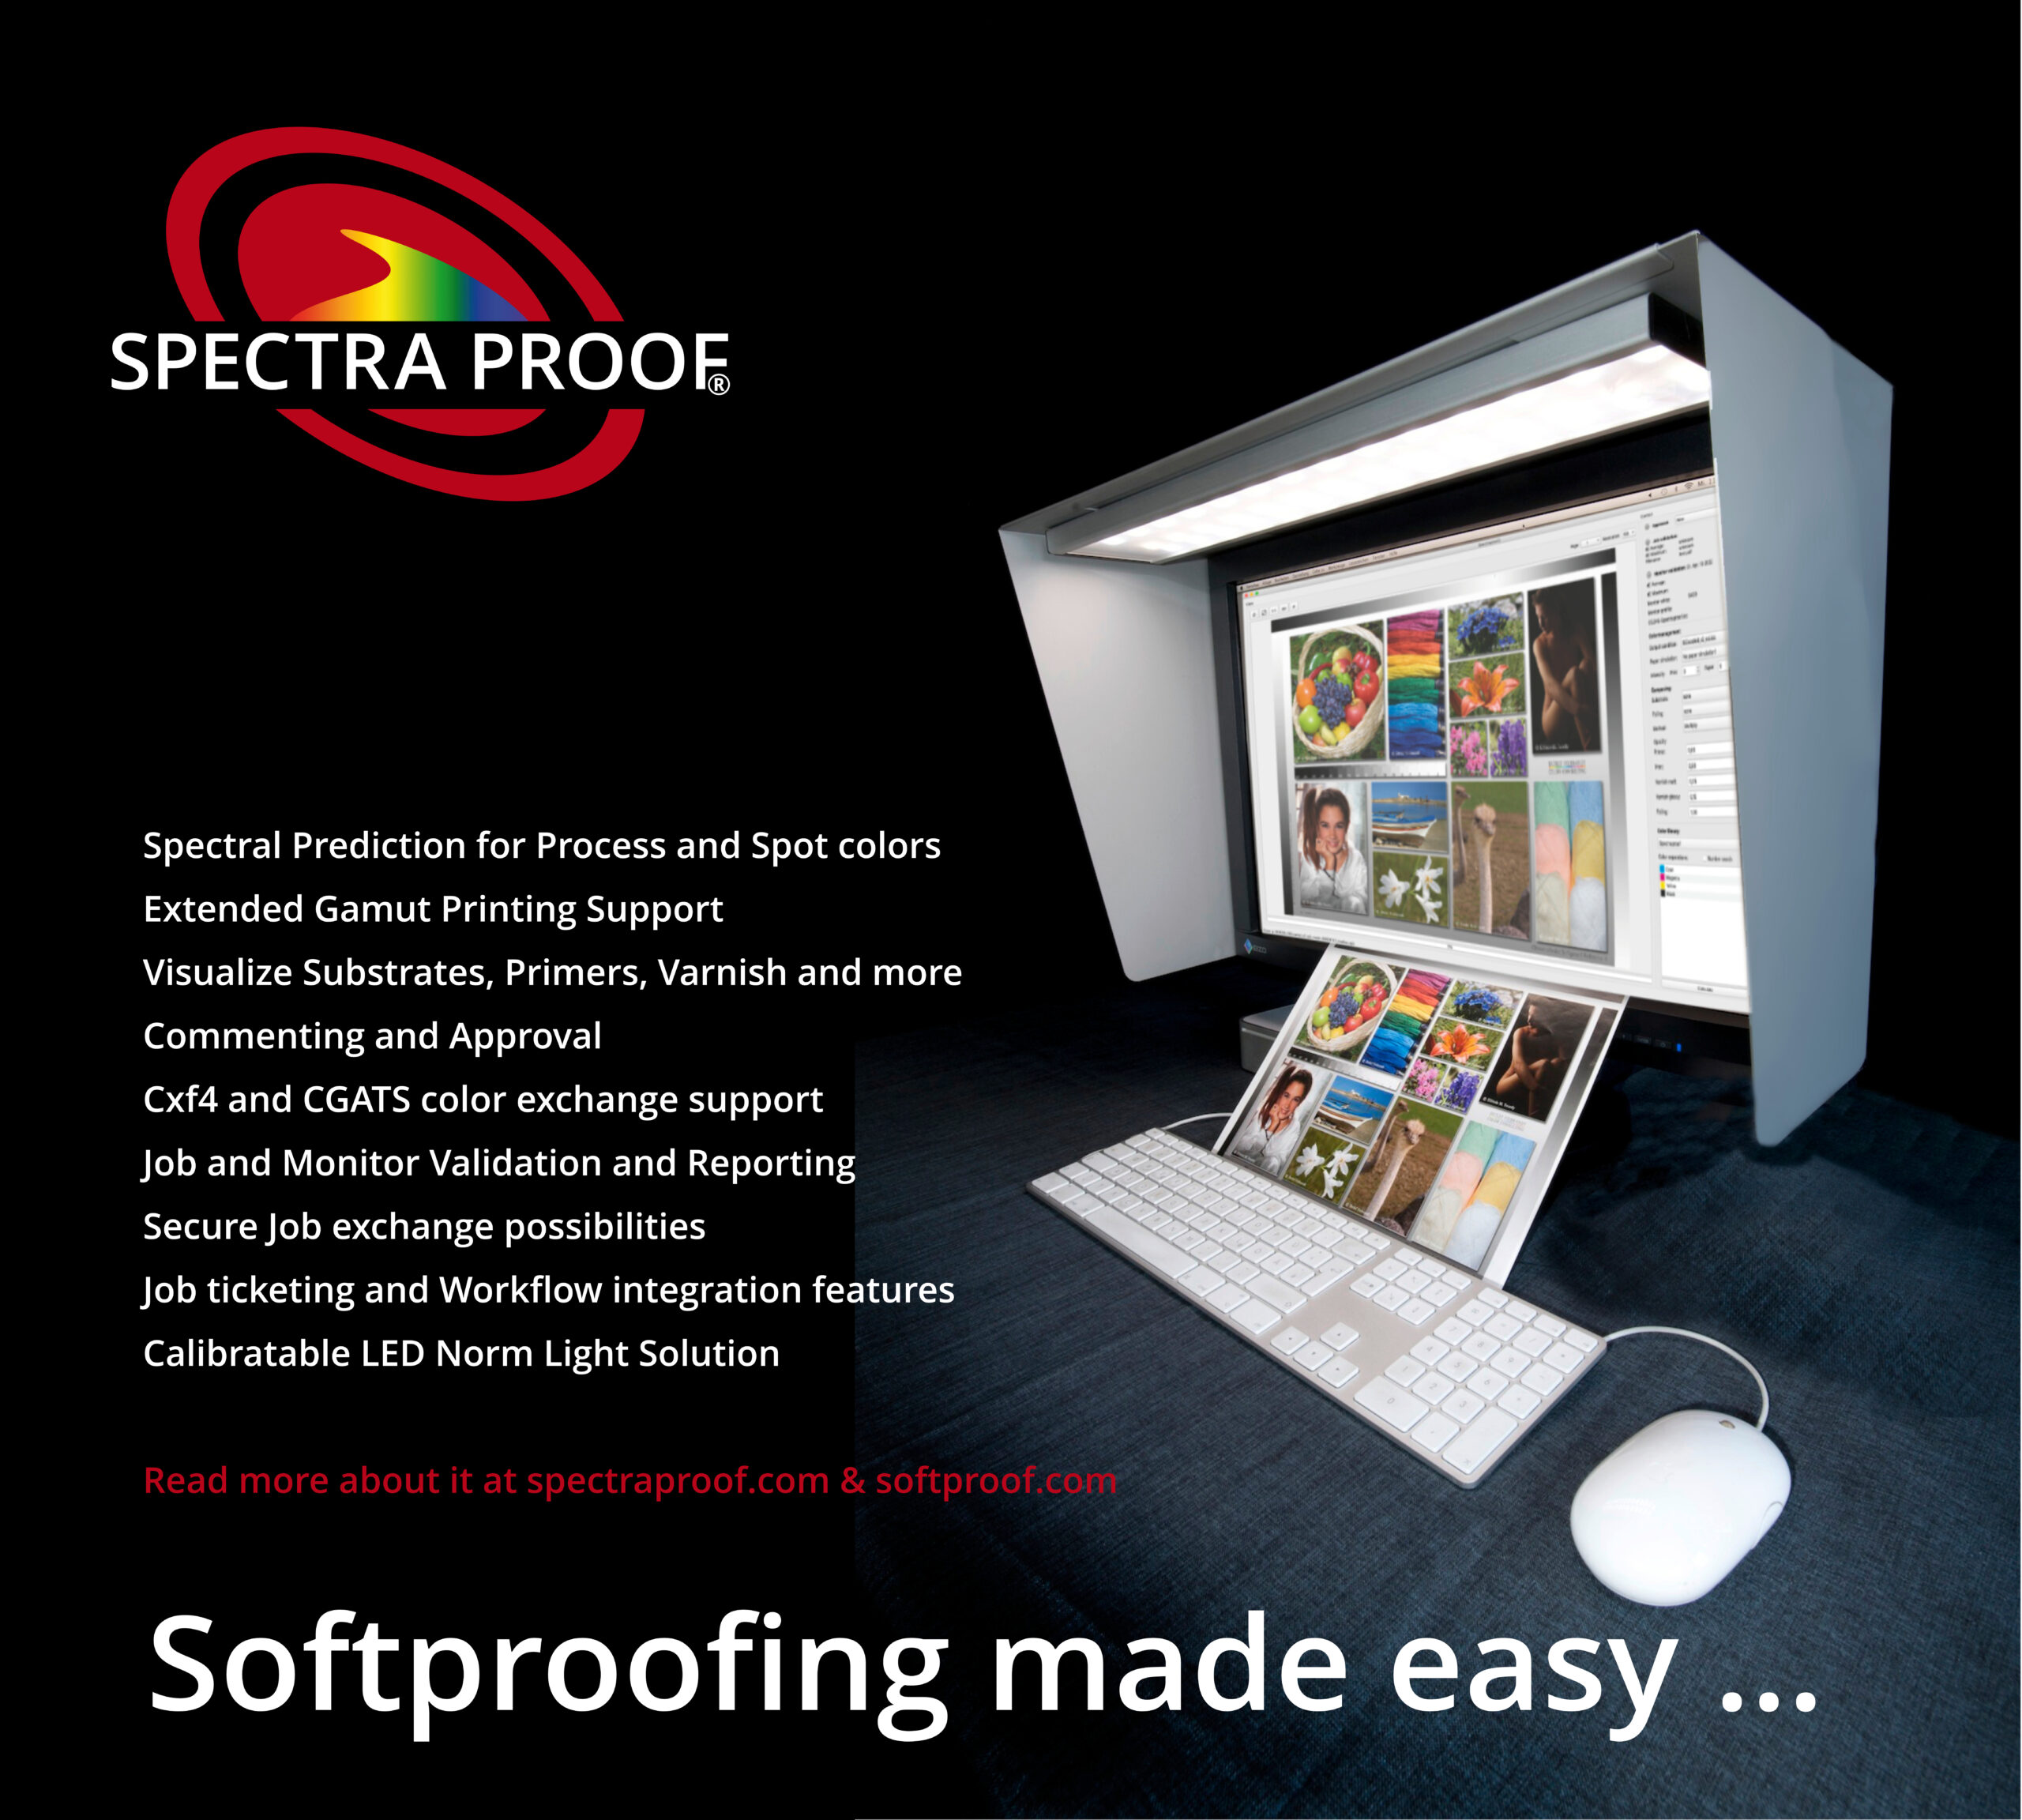 Spectraproof Softproof Řešení se Spectralightem, digestoří, monitorem Softproof: Přesná spektrální predikce pro procesní a bodové barvy